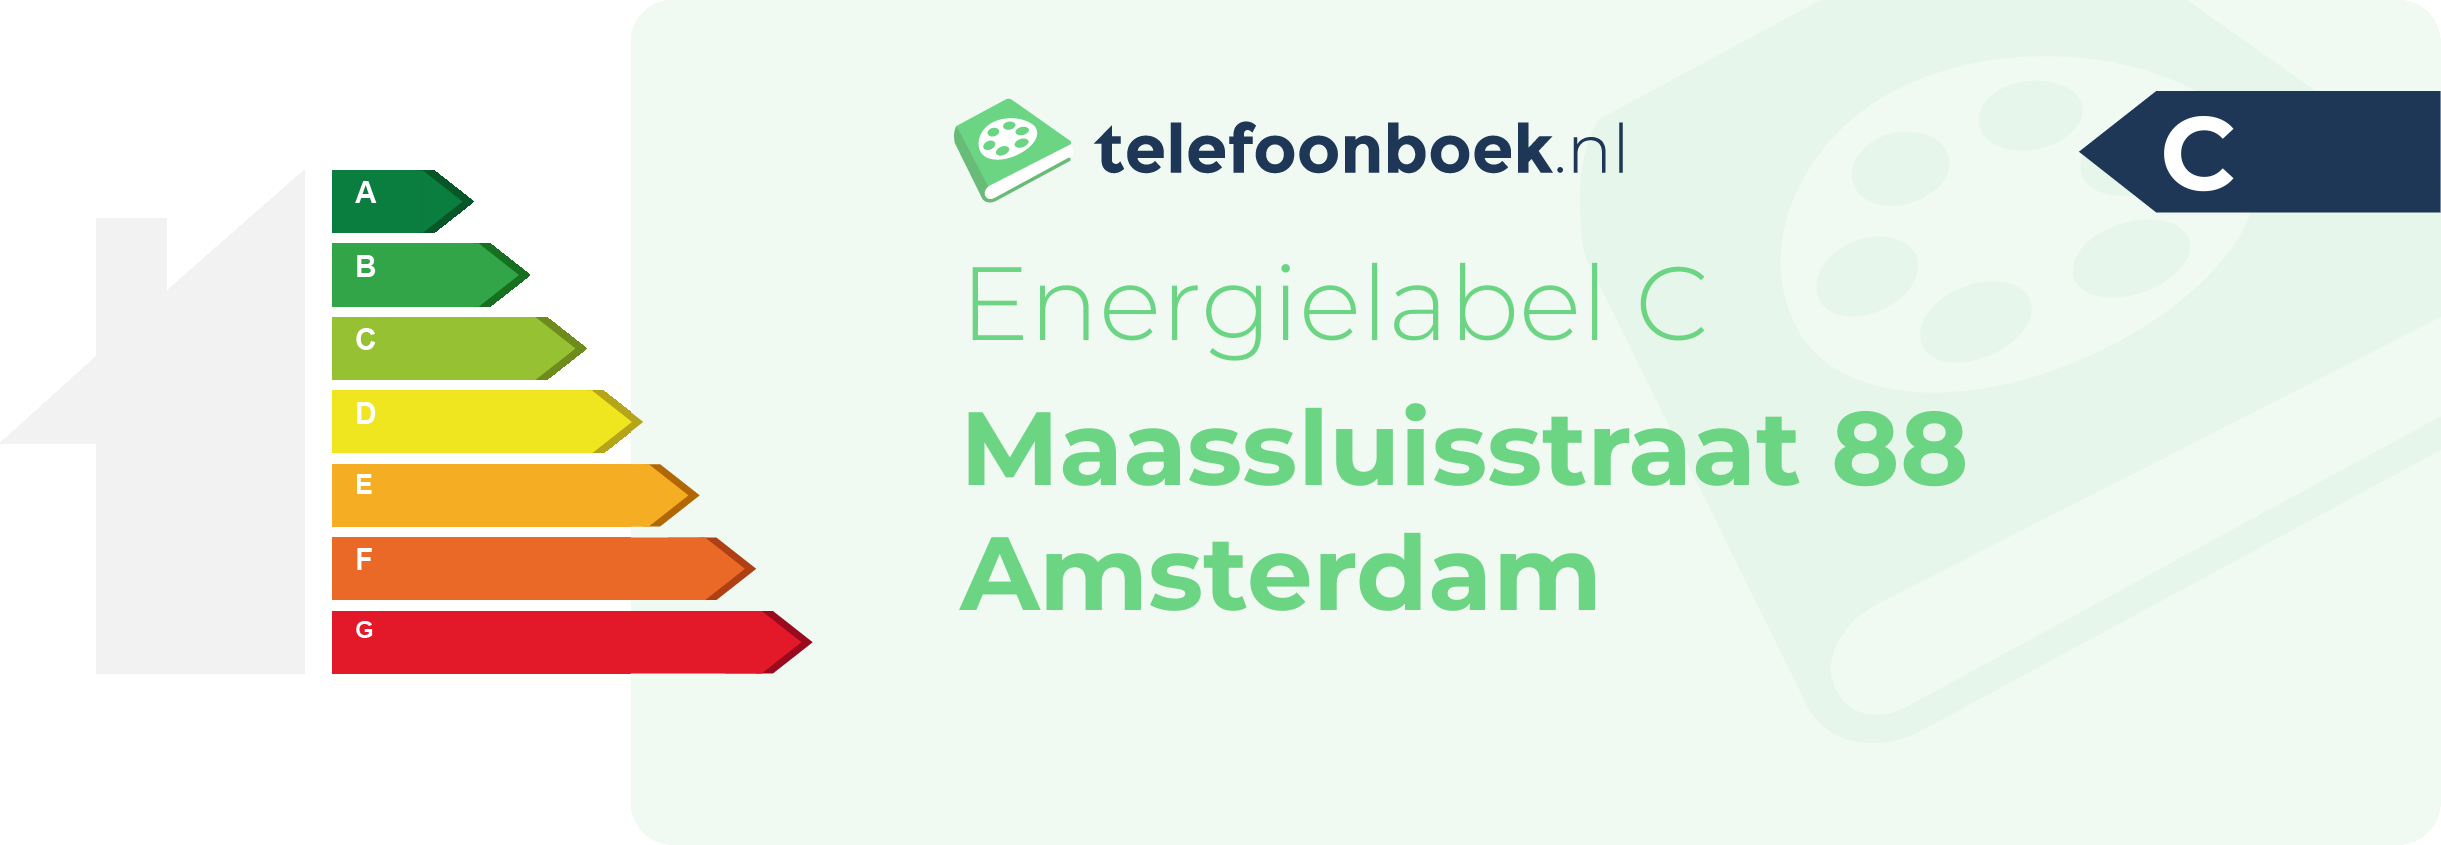 Energielabel Maassluisstraat 88 Amsterdam